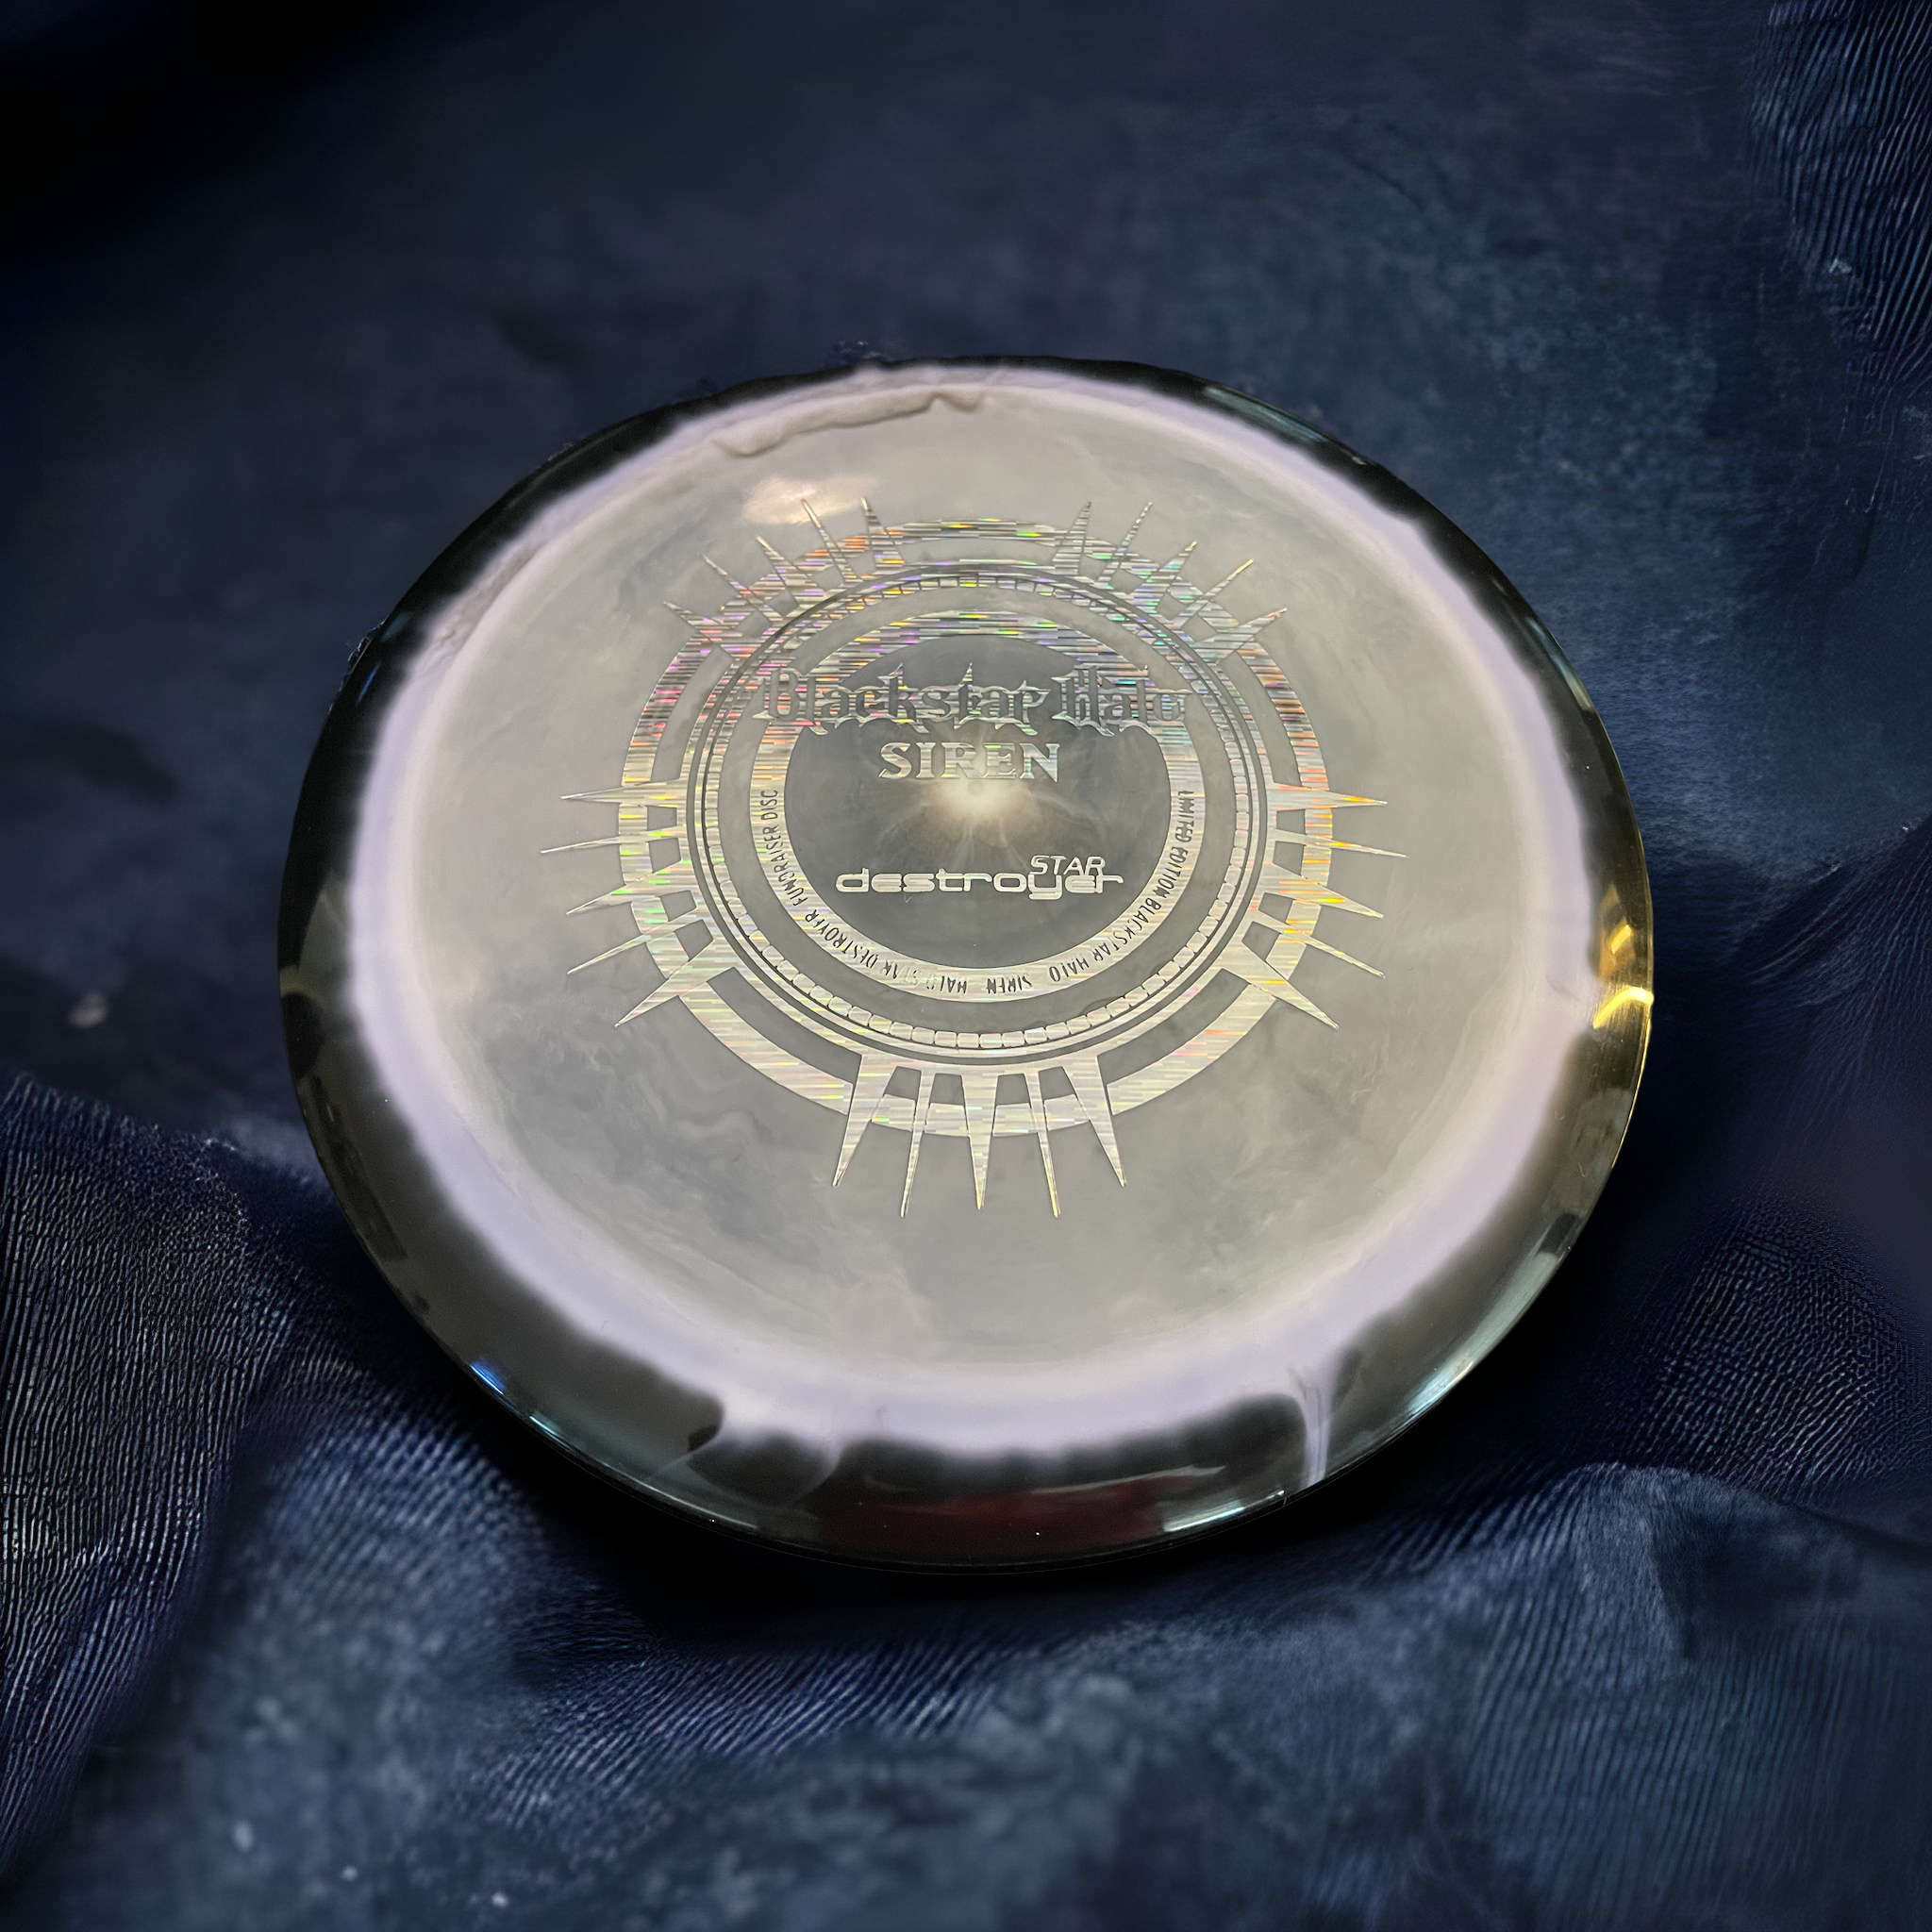 Blackstar Halo Star Destroyer reflective stamp signed